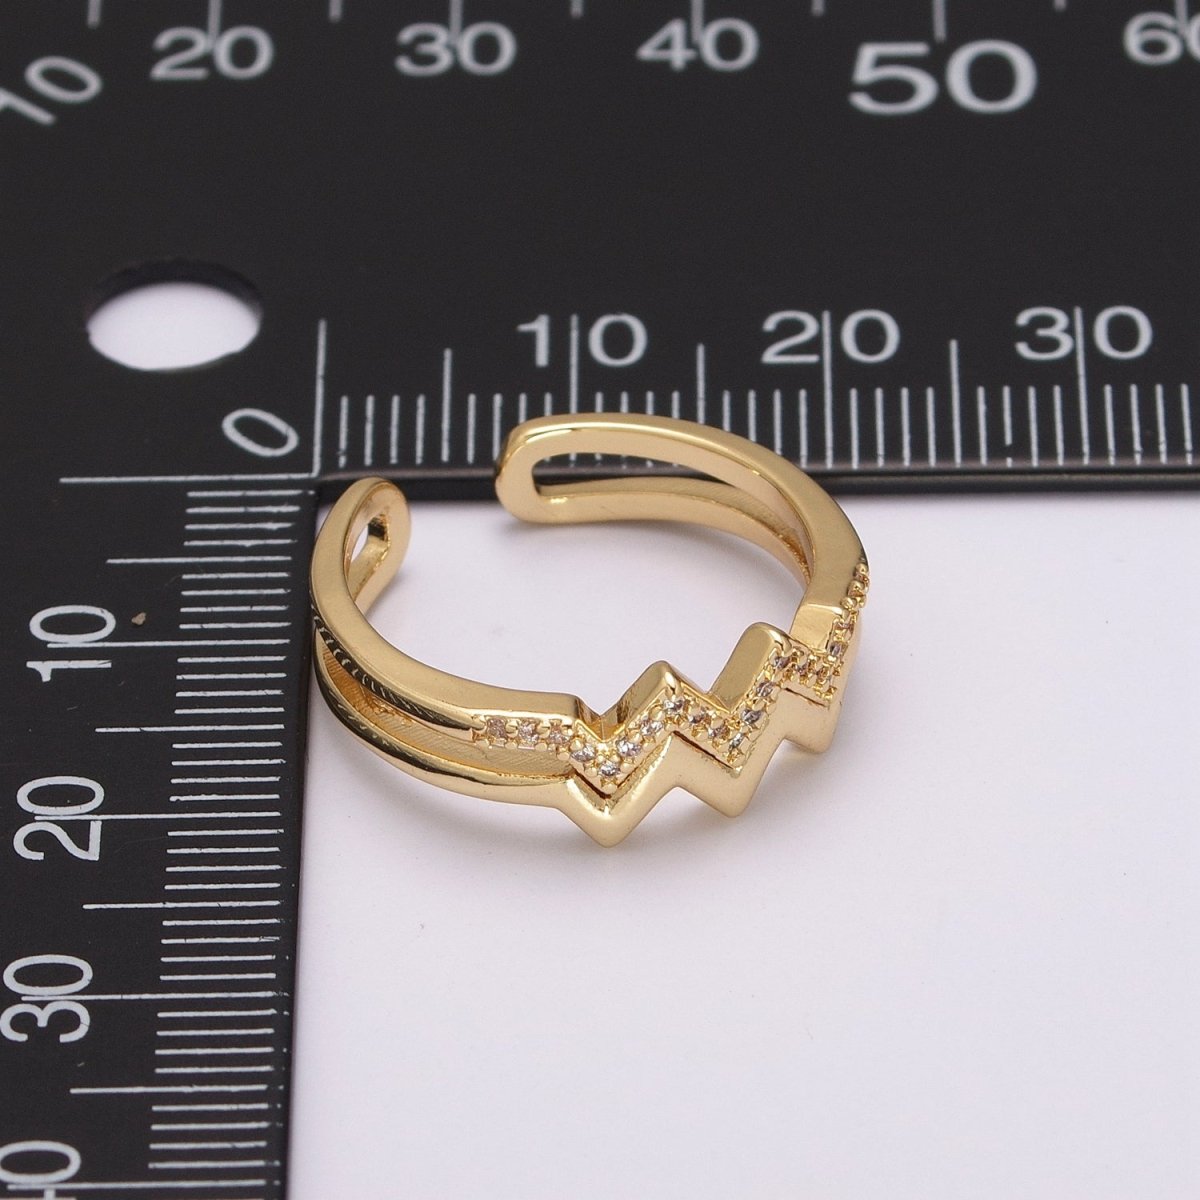 Zig zag stacking Ring Gold, 24K gold Filled wave stacking ring, zig zag ring, thin stacking ring gold Open Adjustable U-121 - DLUXCA